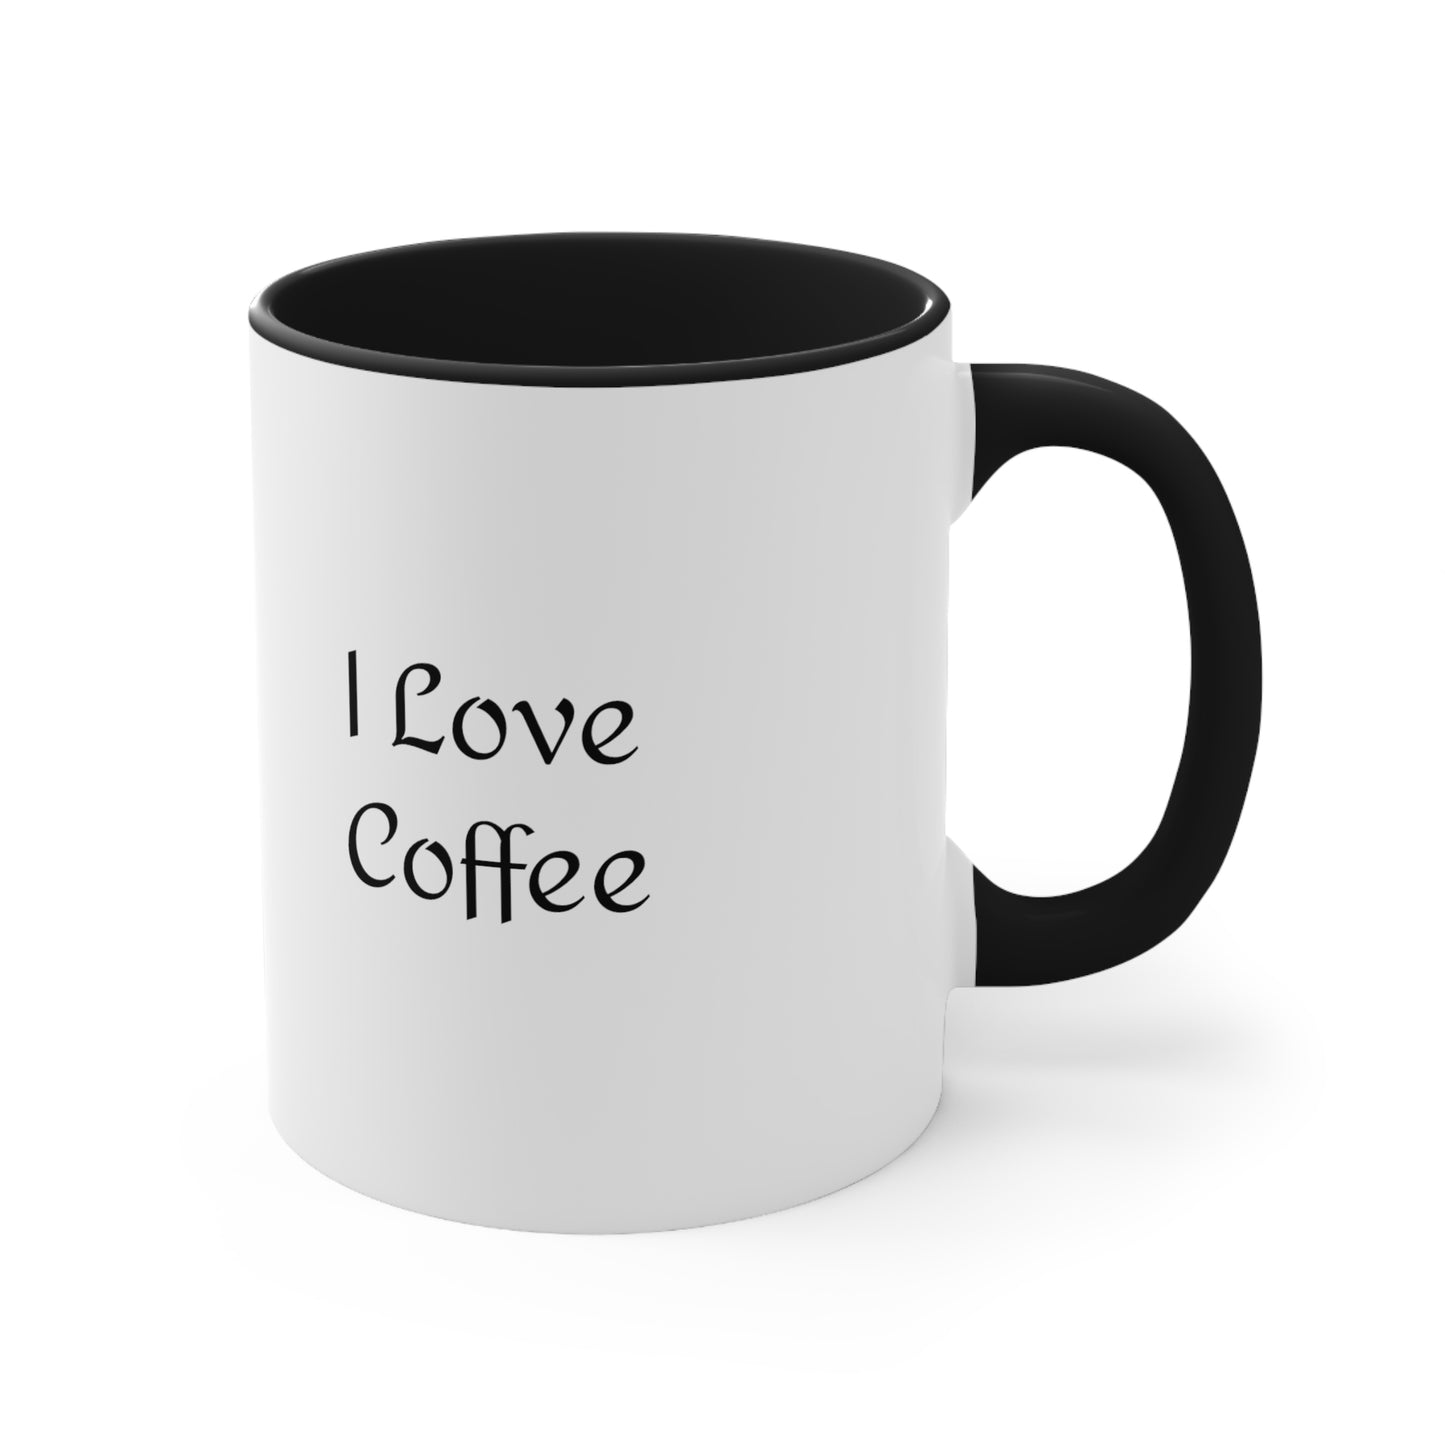 I Love Coffee! Accent Coffee Mug, for coffee lovers 11oz